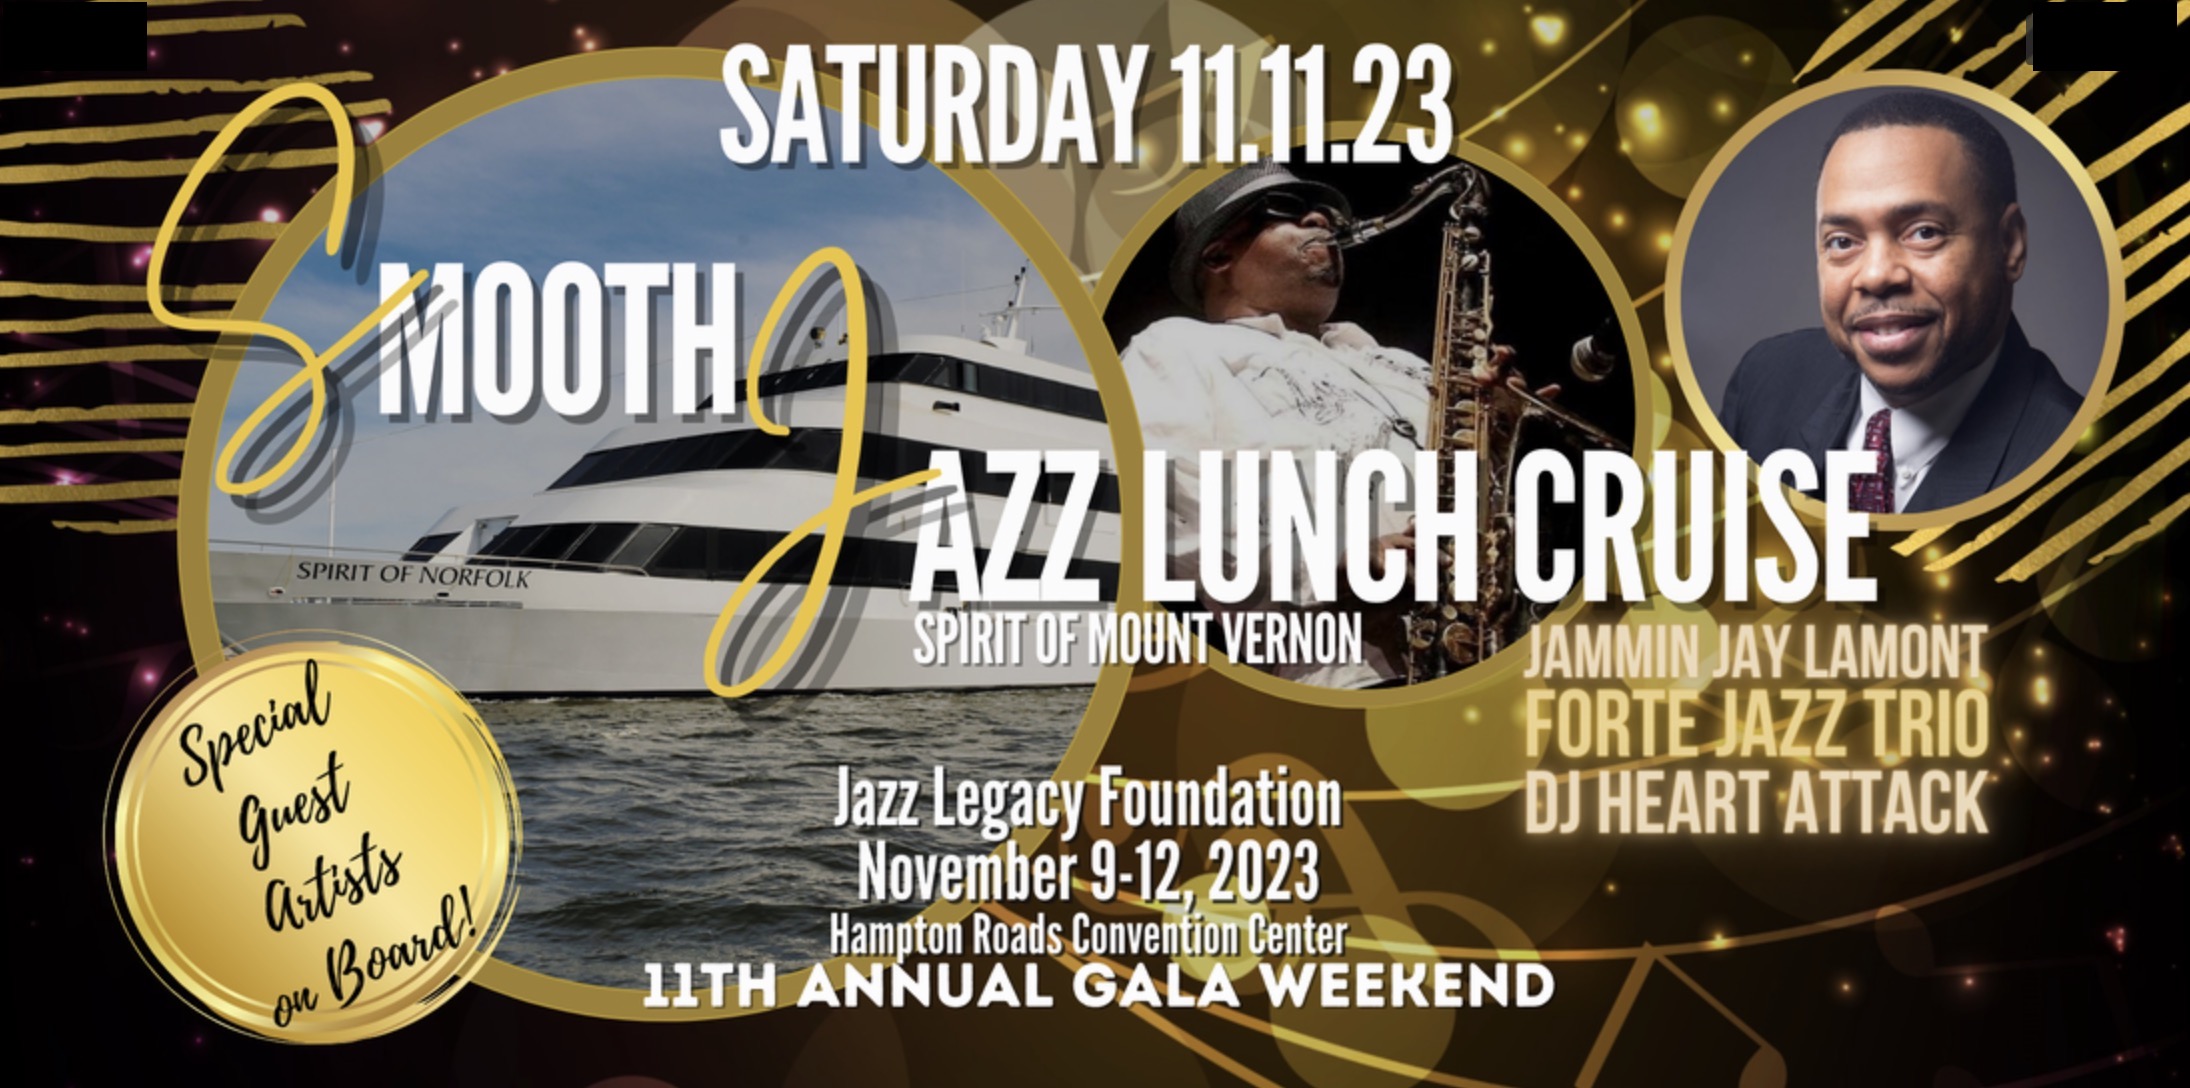 Jazz Legacy Foundation Fundraising Gala Saturday Cruise